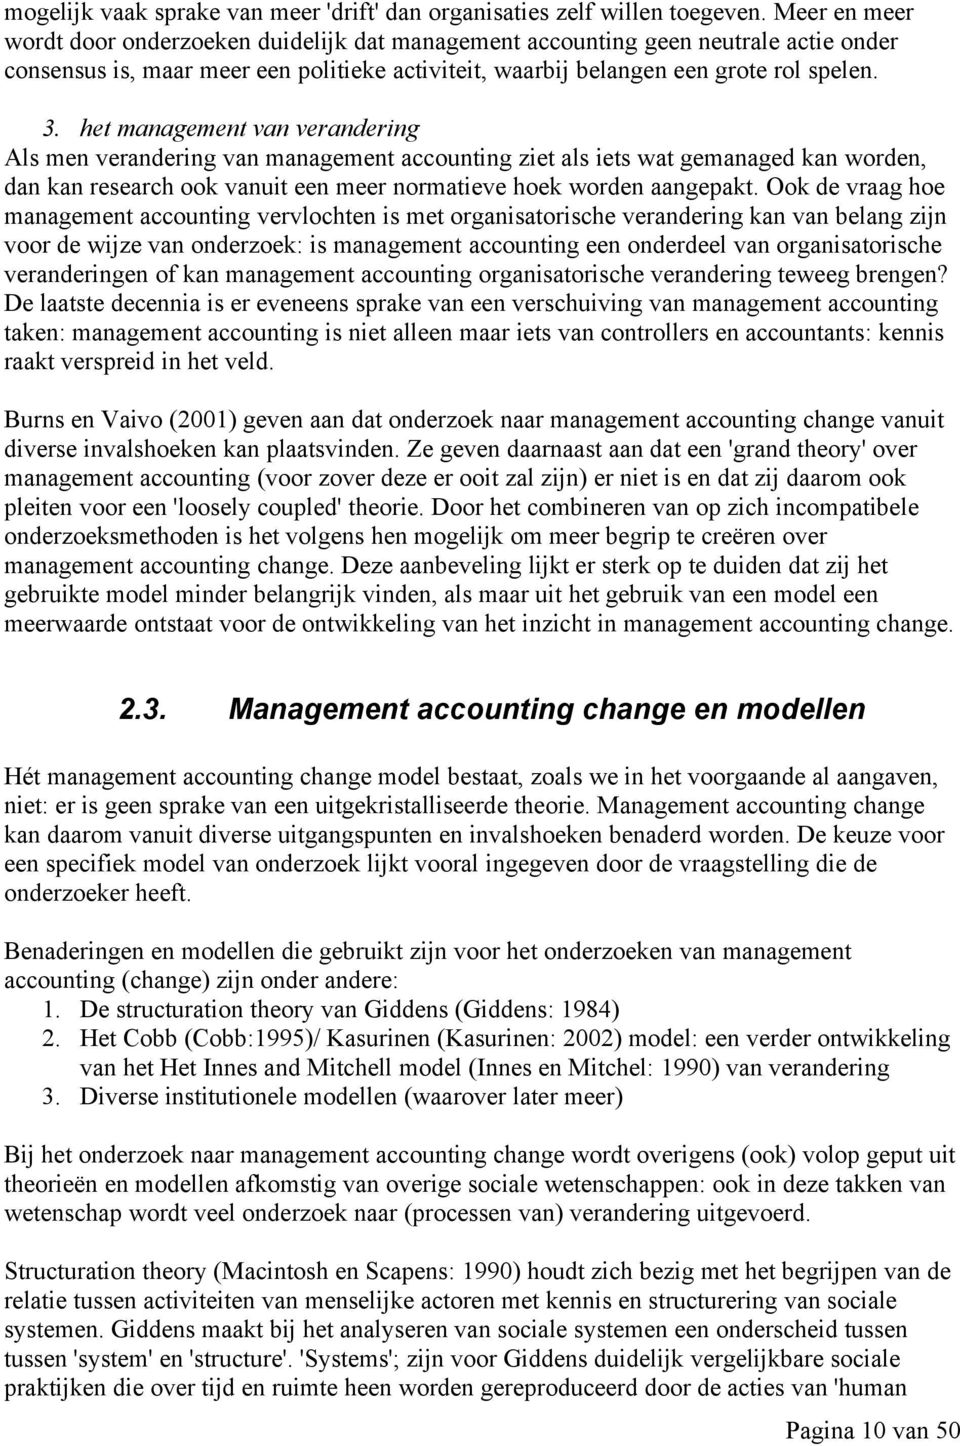 het management van verandering Als men verandering van management accounting ziet als iets wat gemanaged kan worden, dan kan research ook vanuit een meer normatieve hoek worden aangepakt.